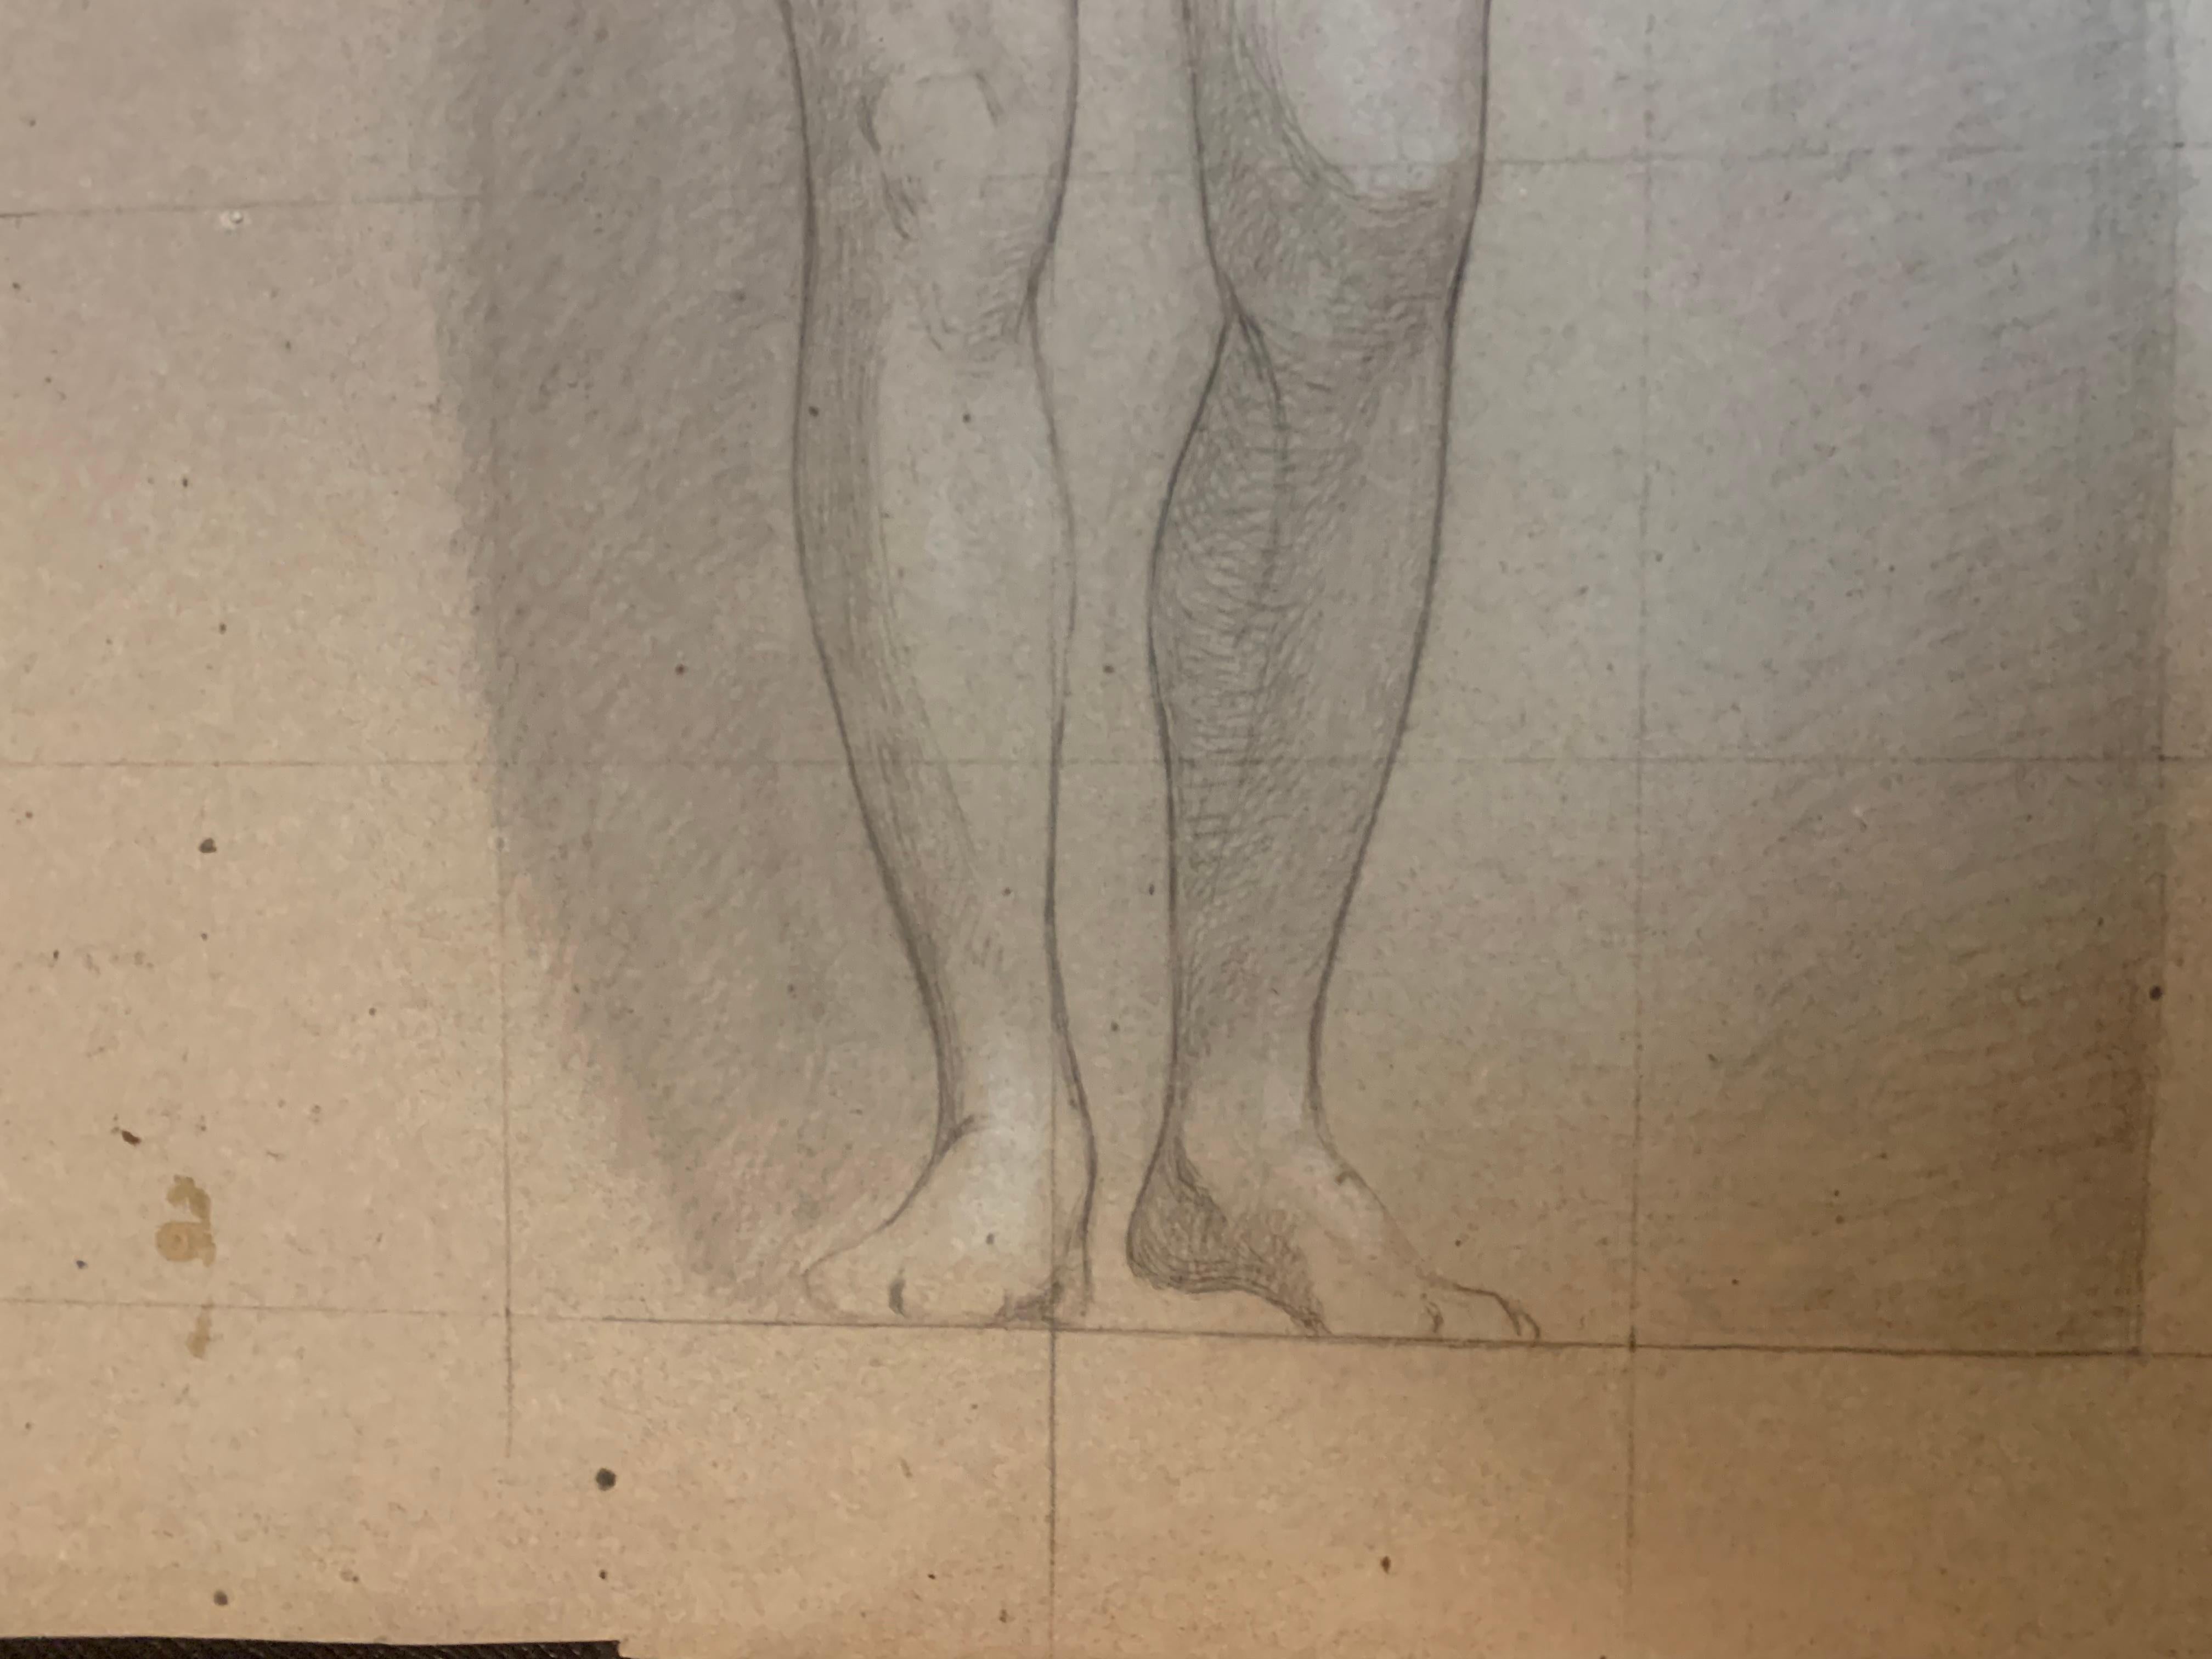 Un grande bozzetto- studio di figura femminile.
XIX secolo.
La giovane donna è rappresentata nuda , con con la mano che sembra richiamare l'attenzione.
La figura inserita in una nicchia. Grande disegno su carta leggermente colorata. Il disegno